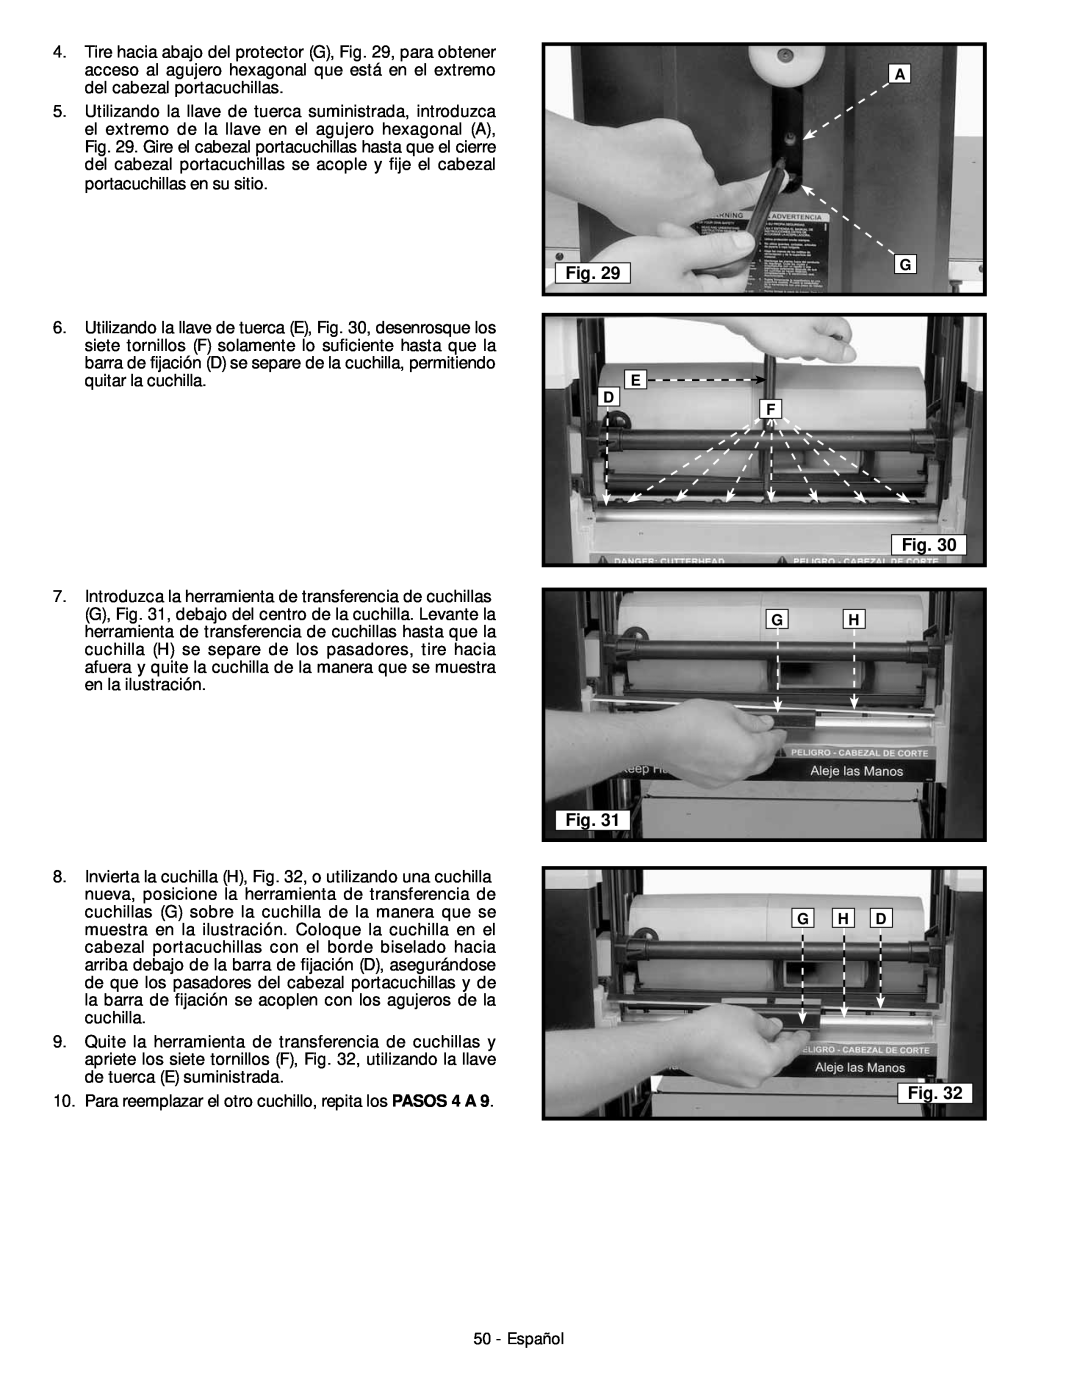 DeWalt 18657 instruction manual Para reemplazar el otro cuchillo, repita los PASOS 4 A 